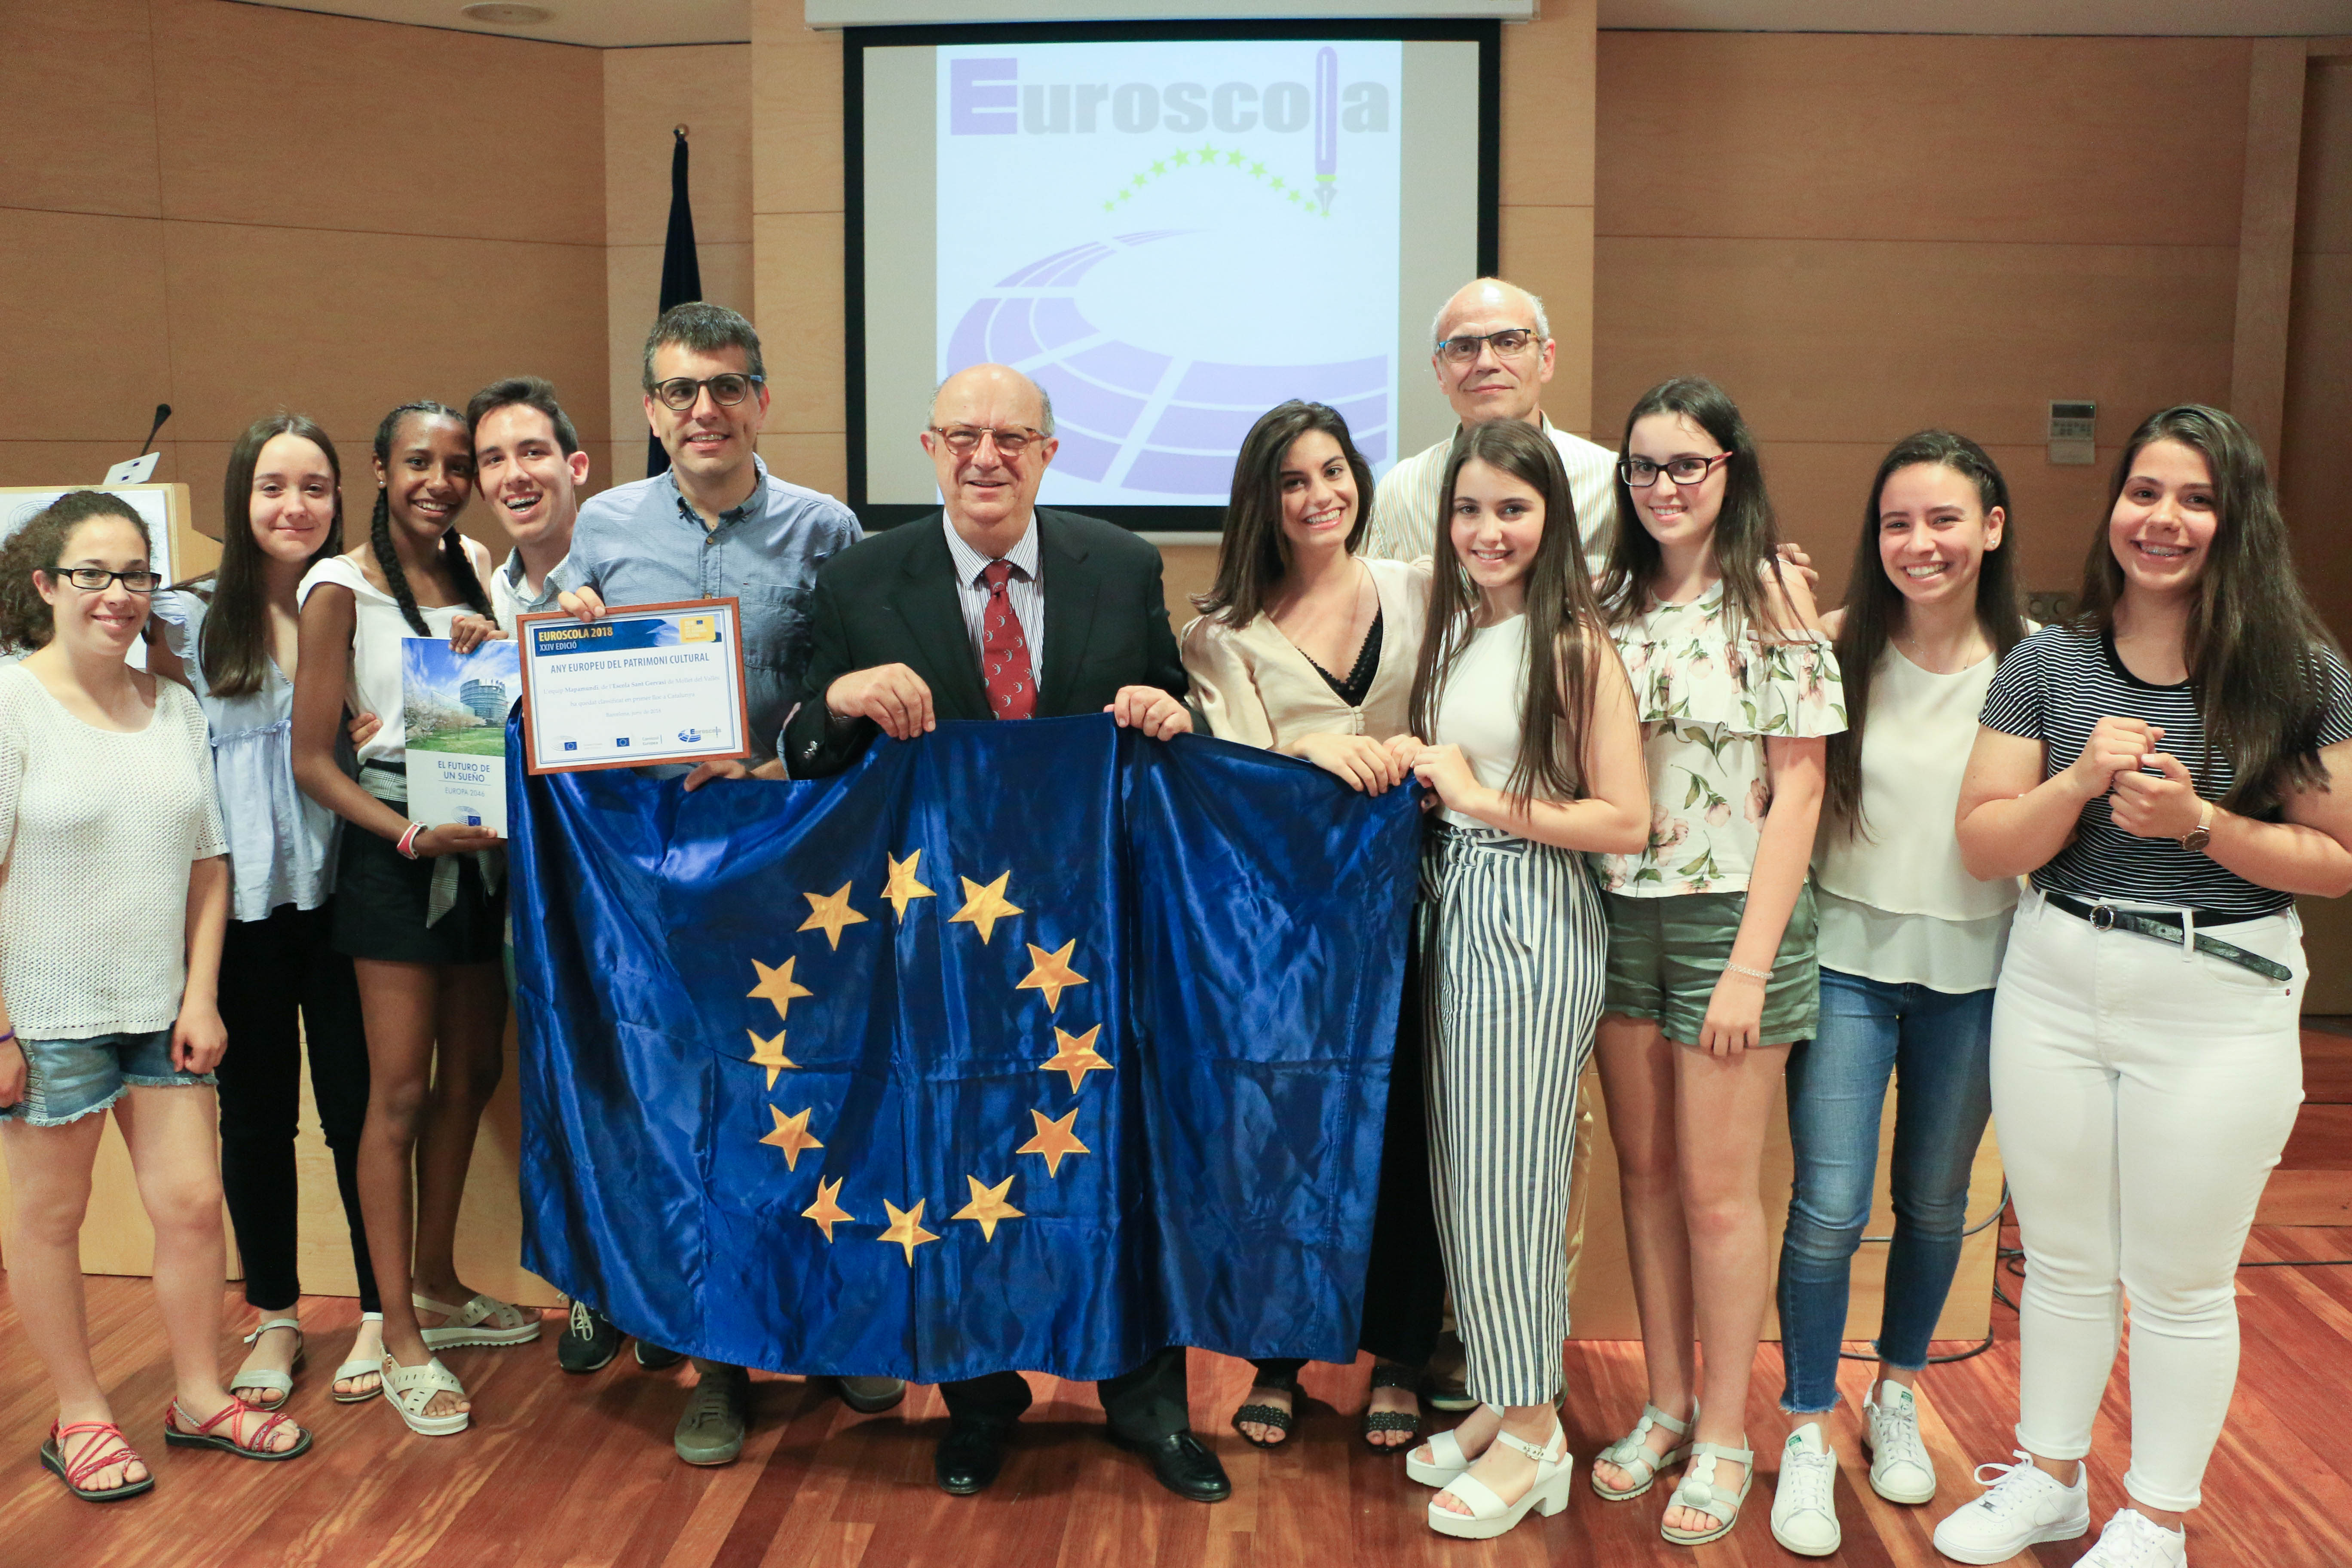 Es lliuren els Premis Euroscola del Parlament Europeu a alumnes de 4t d’ESO